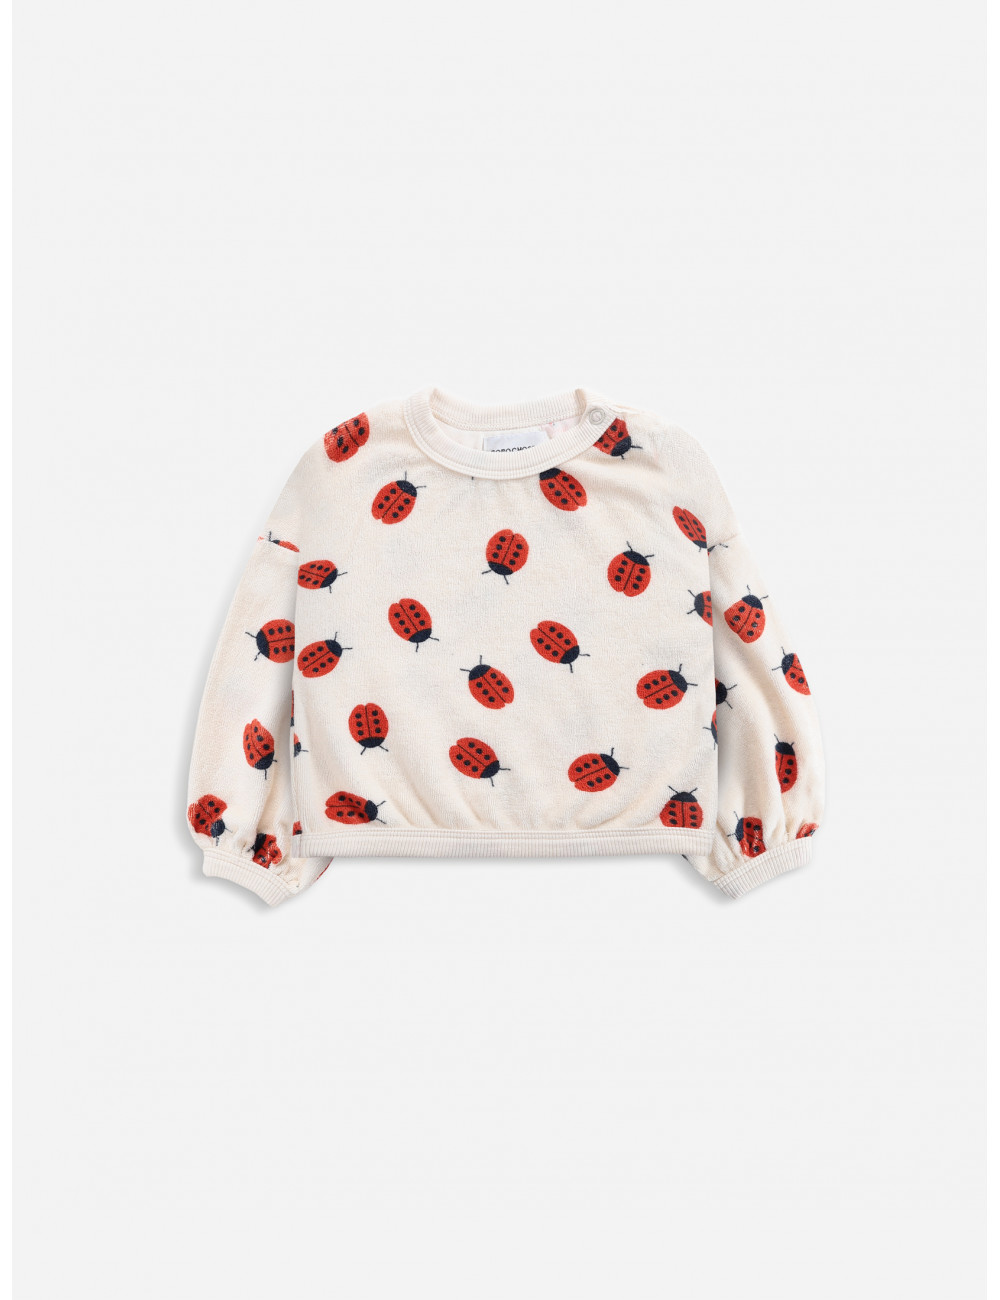 Sweatshirt | ladybug all over